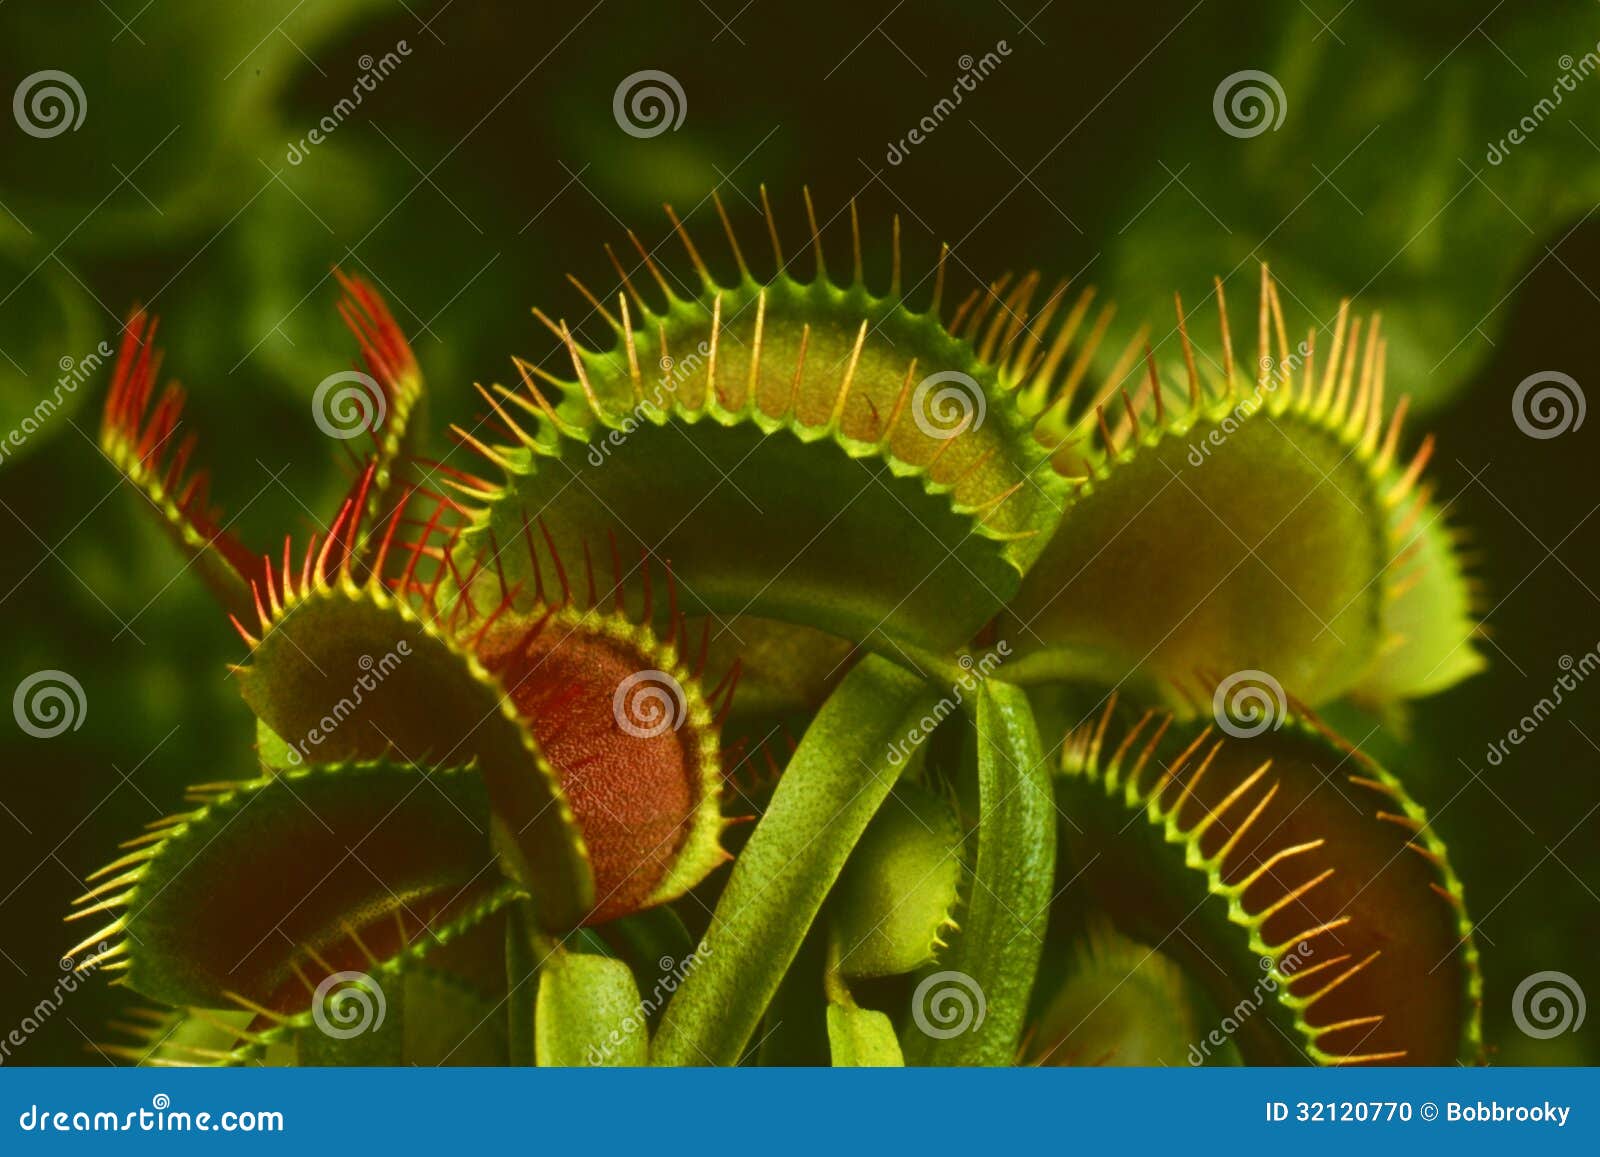 venus flytrap (dionaea muscipula)